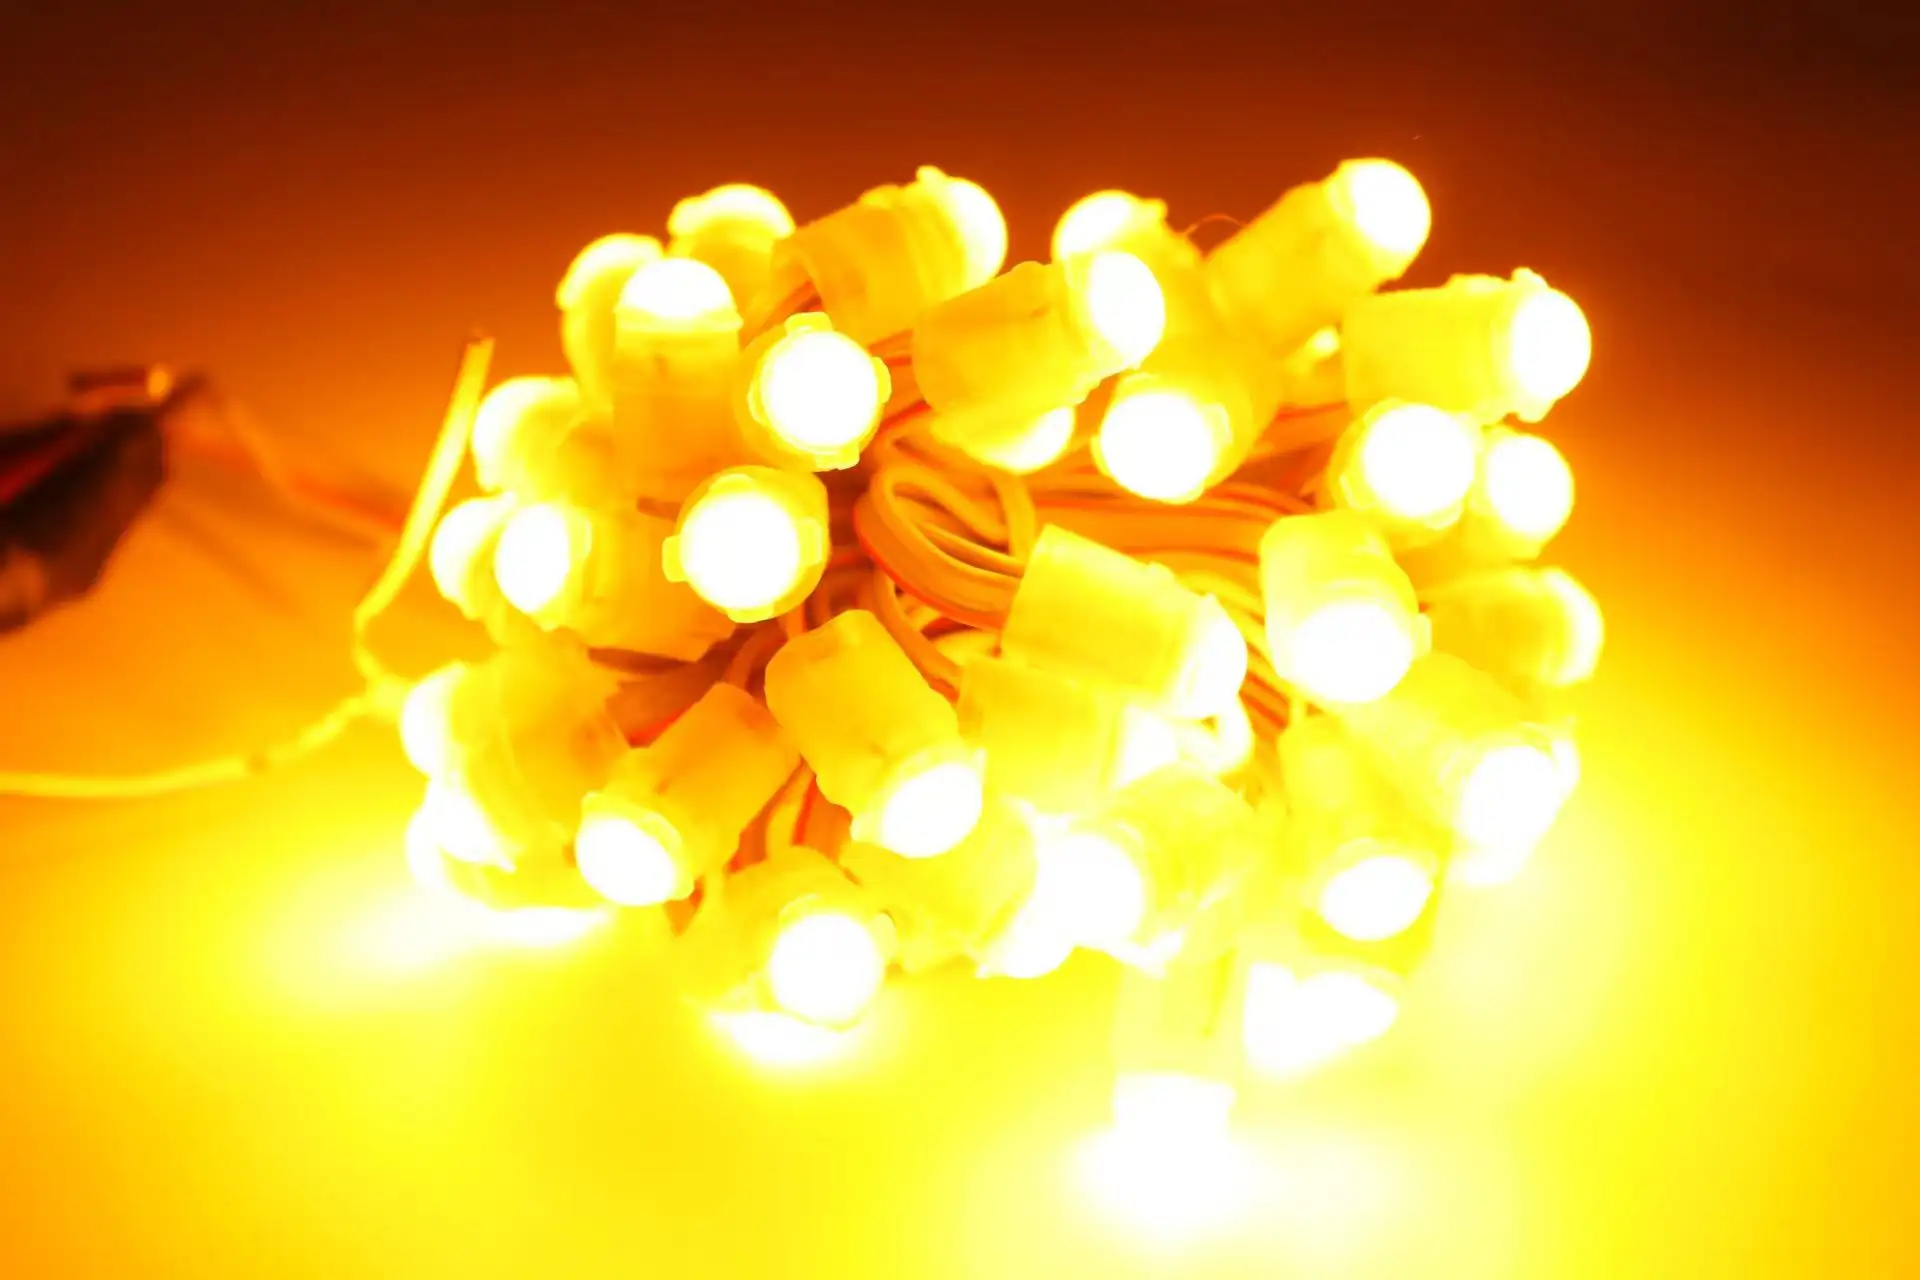 Feijão milagroso led decorações de natal luz de pixel de ponto de luz de pixel de led de cor única luz de corda de pixel de led